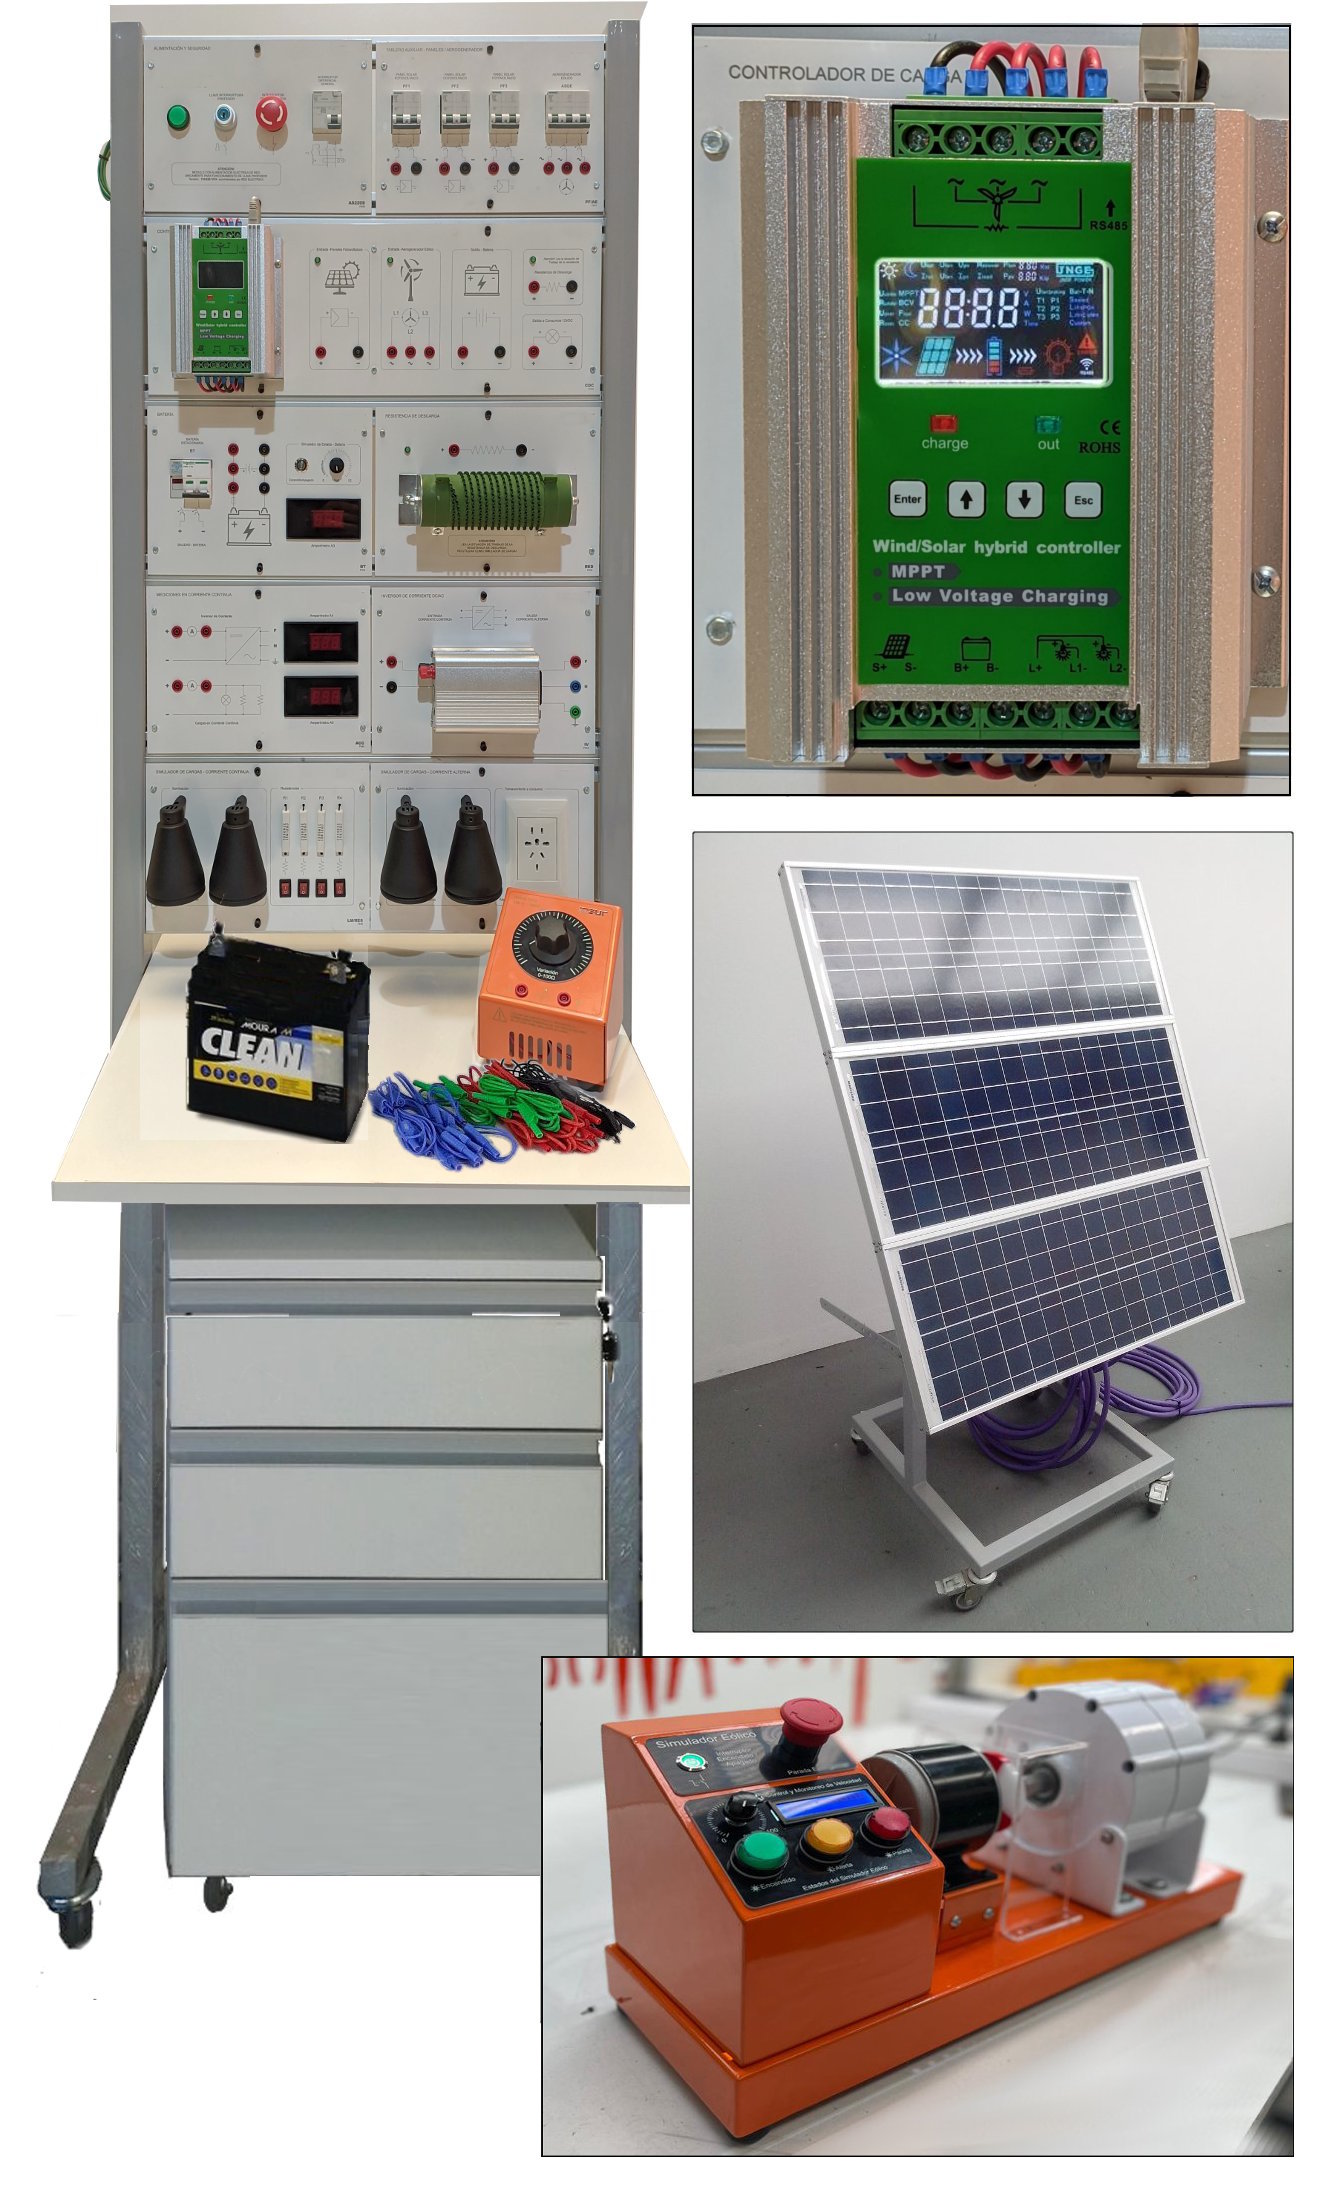 Estudio avanzado de energías renovables eólica y solar fotovoltaica c/generador, paneles, inversor, cargas y bastidor HSE 25 TP10C b